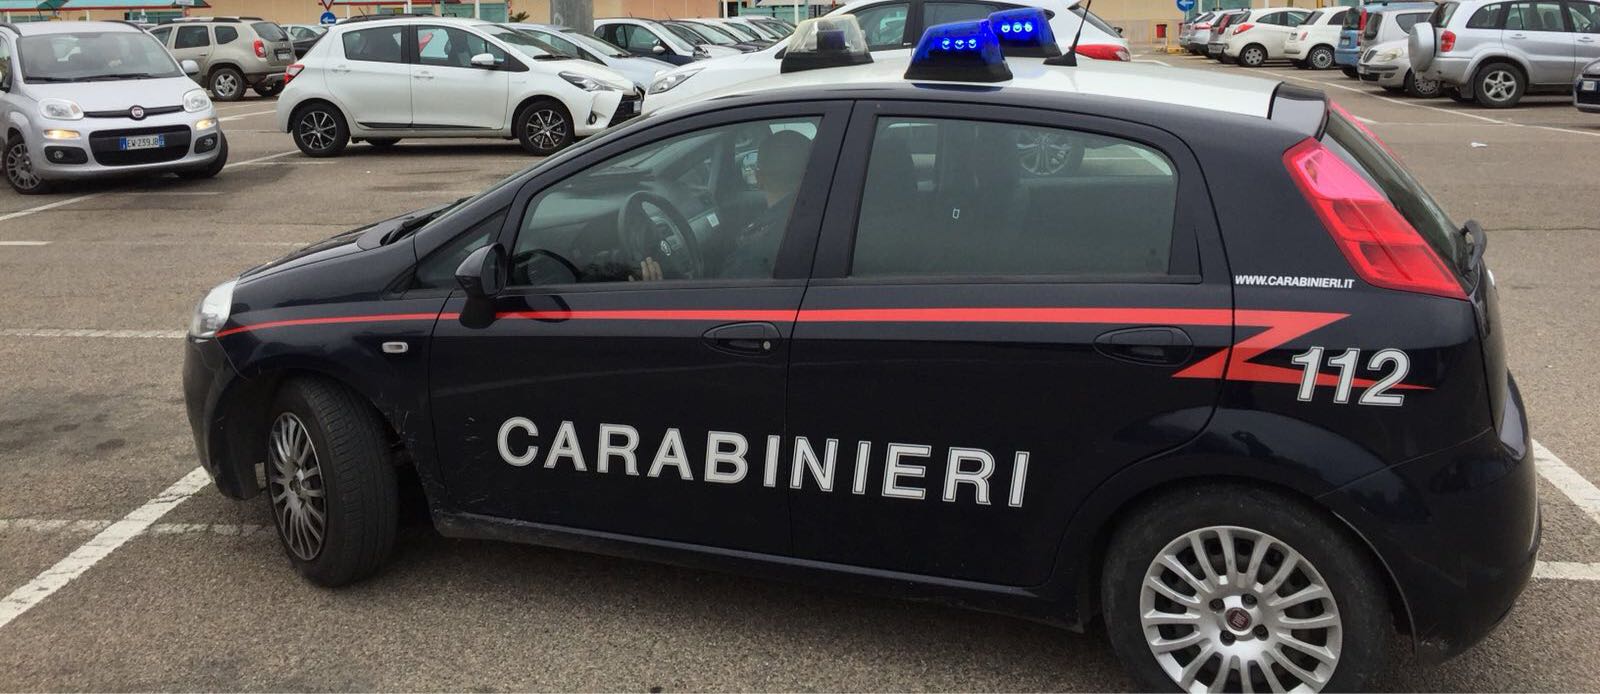 carabinieri arresto aeroporto francesco cusinu